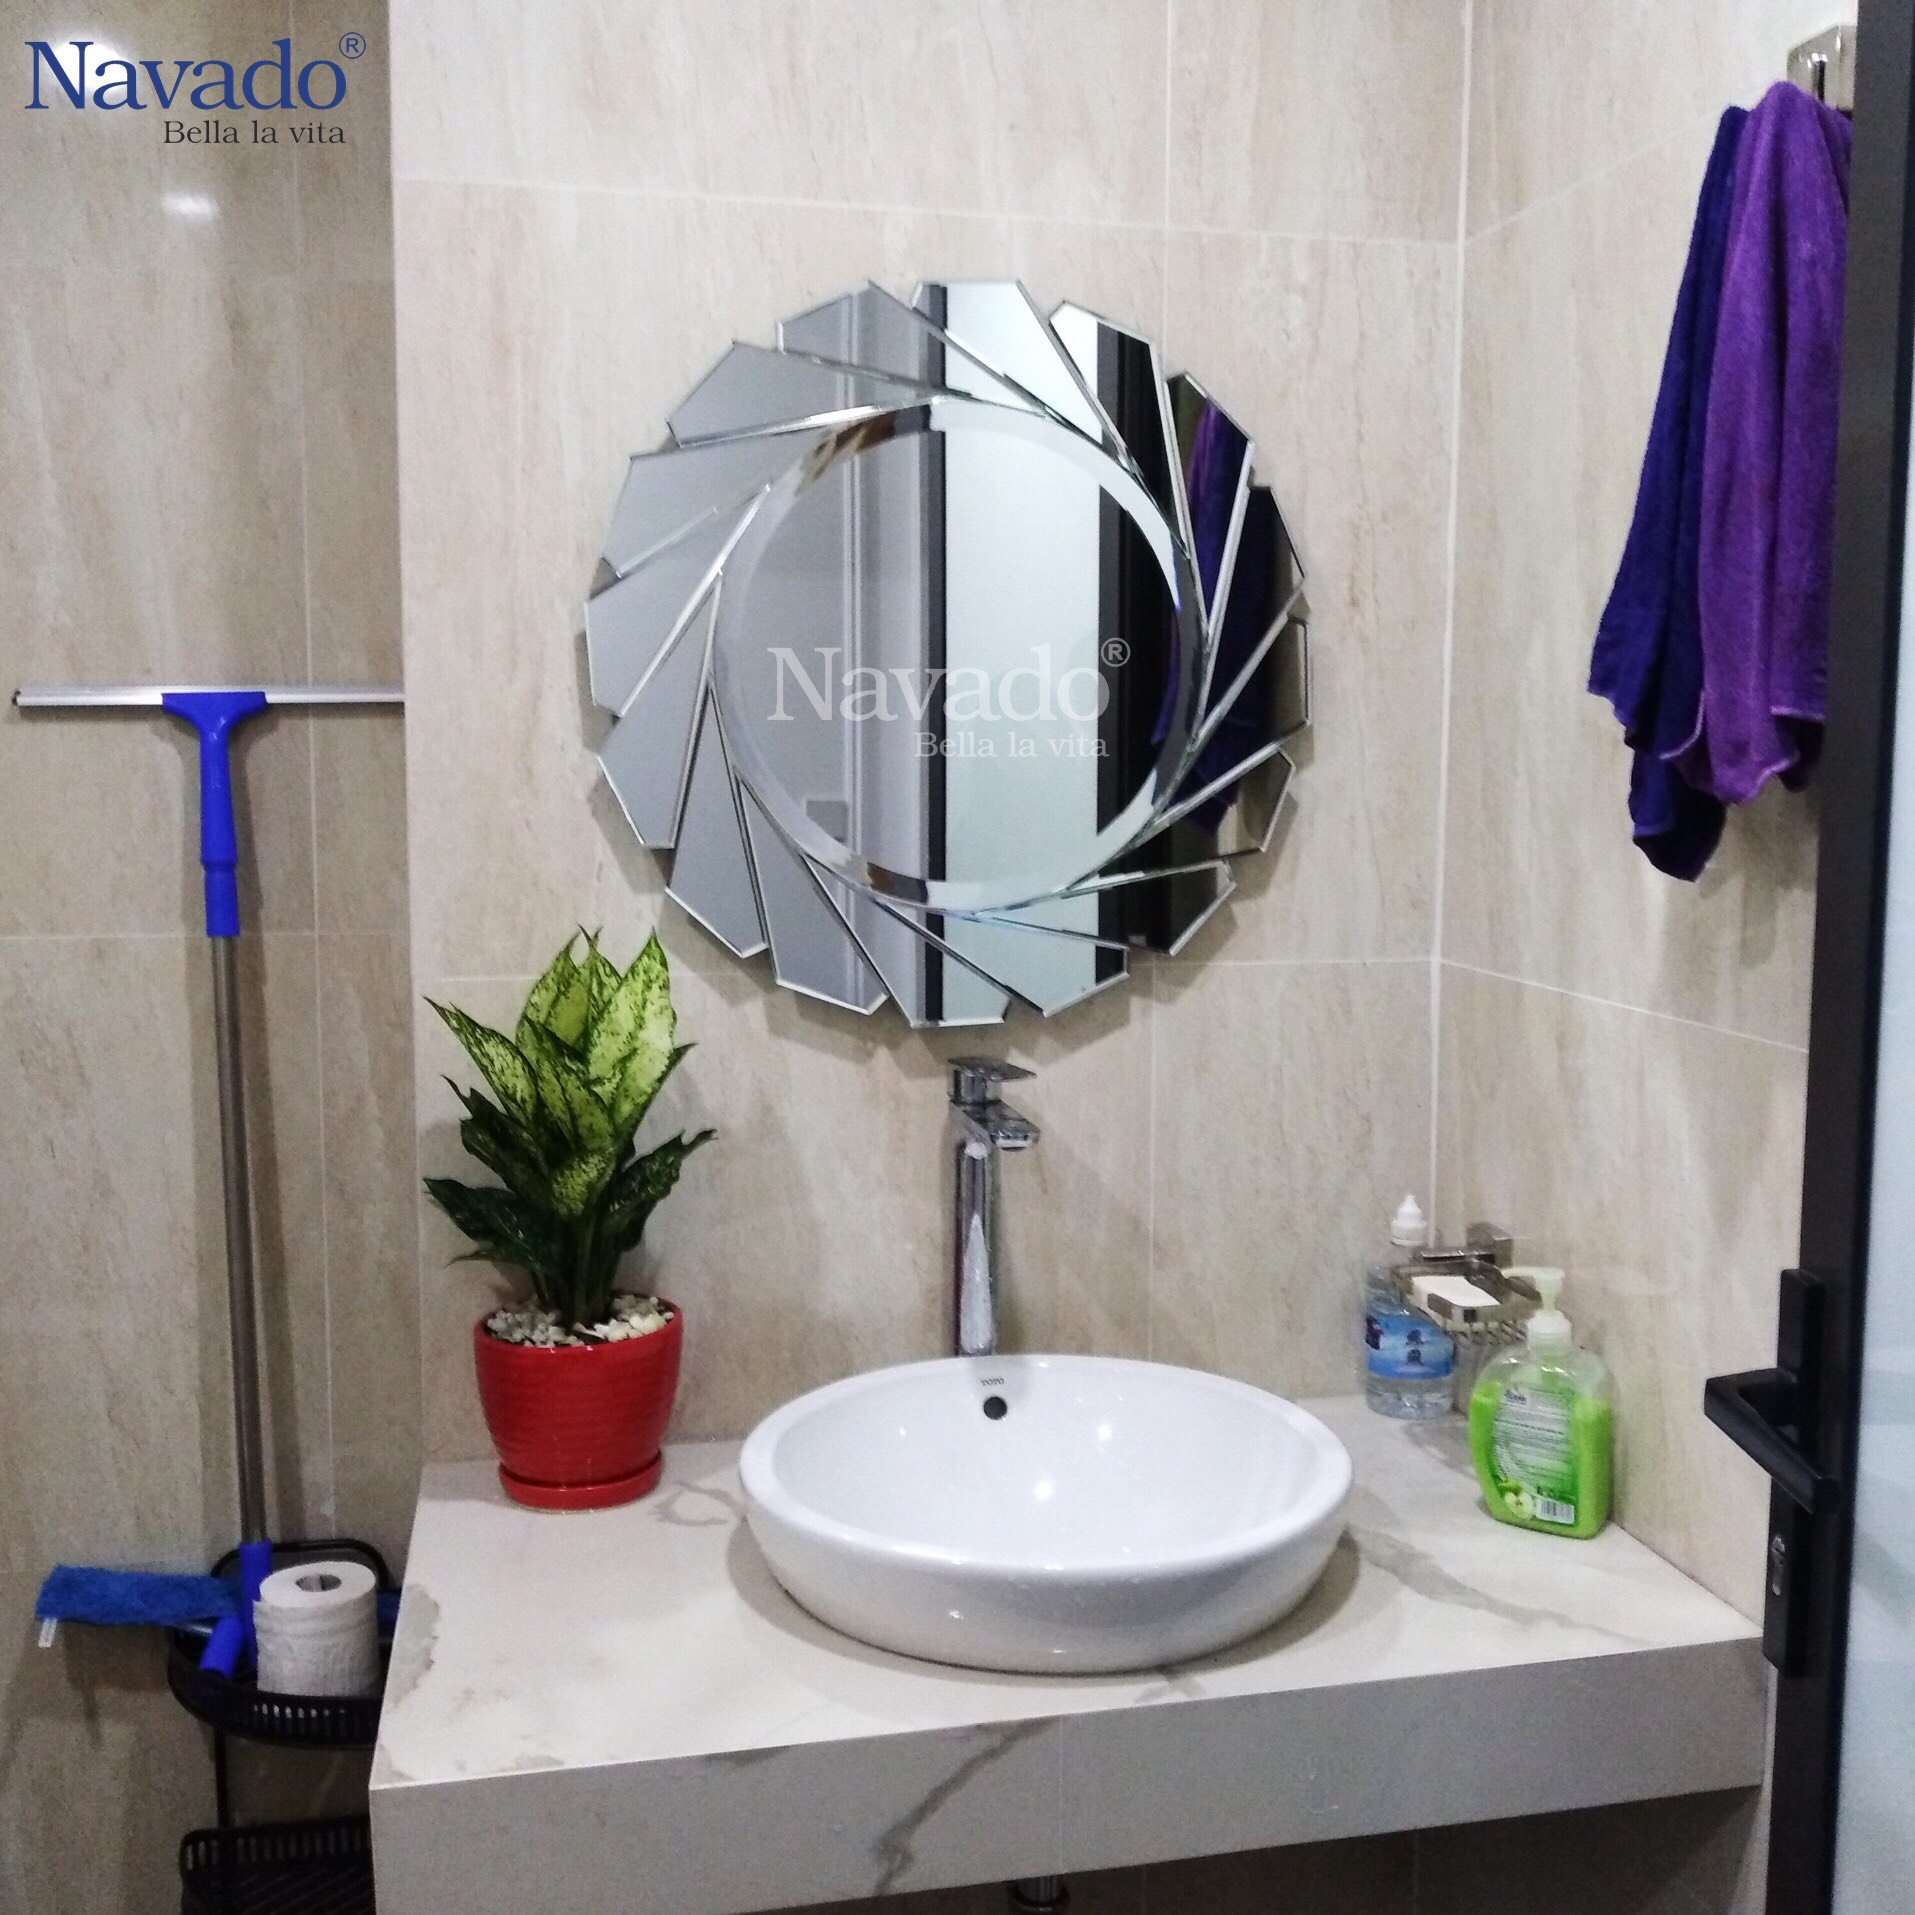 Gương phòng tắm Luxury Navado Hà Nội là sự lựa chọn hoàn hảo cho những ai muốn tìm kiếm sản phẩm gương cao cấp và sang trọng. Với thiết kế đột phá, tạo điểm nhấn cho không gian phòng tắm của bạn, and thiết kế vững chắc tăng độ bền cho sản phẩm khi sử dụng. Hãy thưởng thức hình ảnh sản phẩm và cho phòng tắm của bạn sự đẳng cấp bạn đang tìm kiếm.